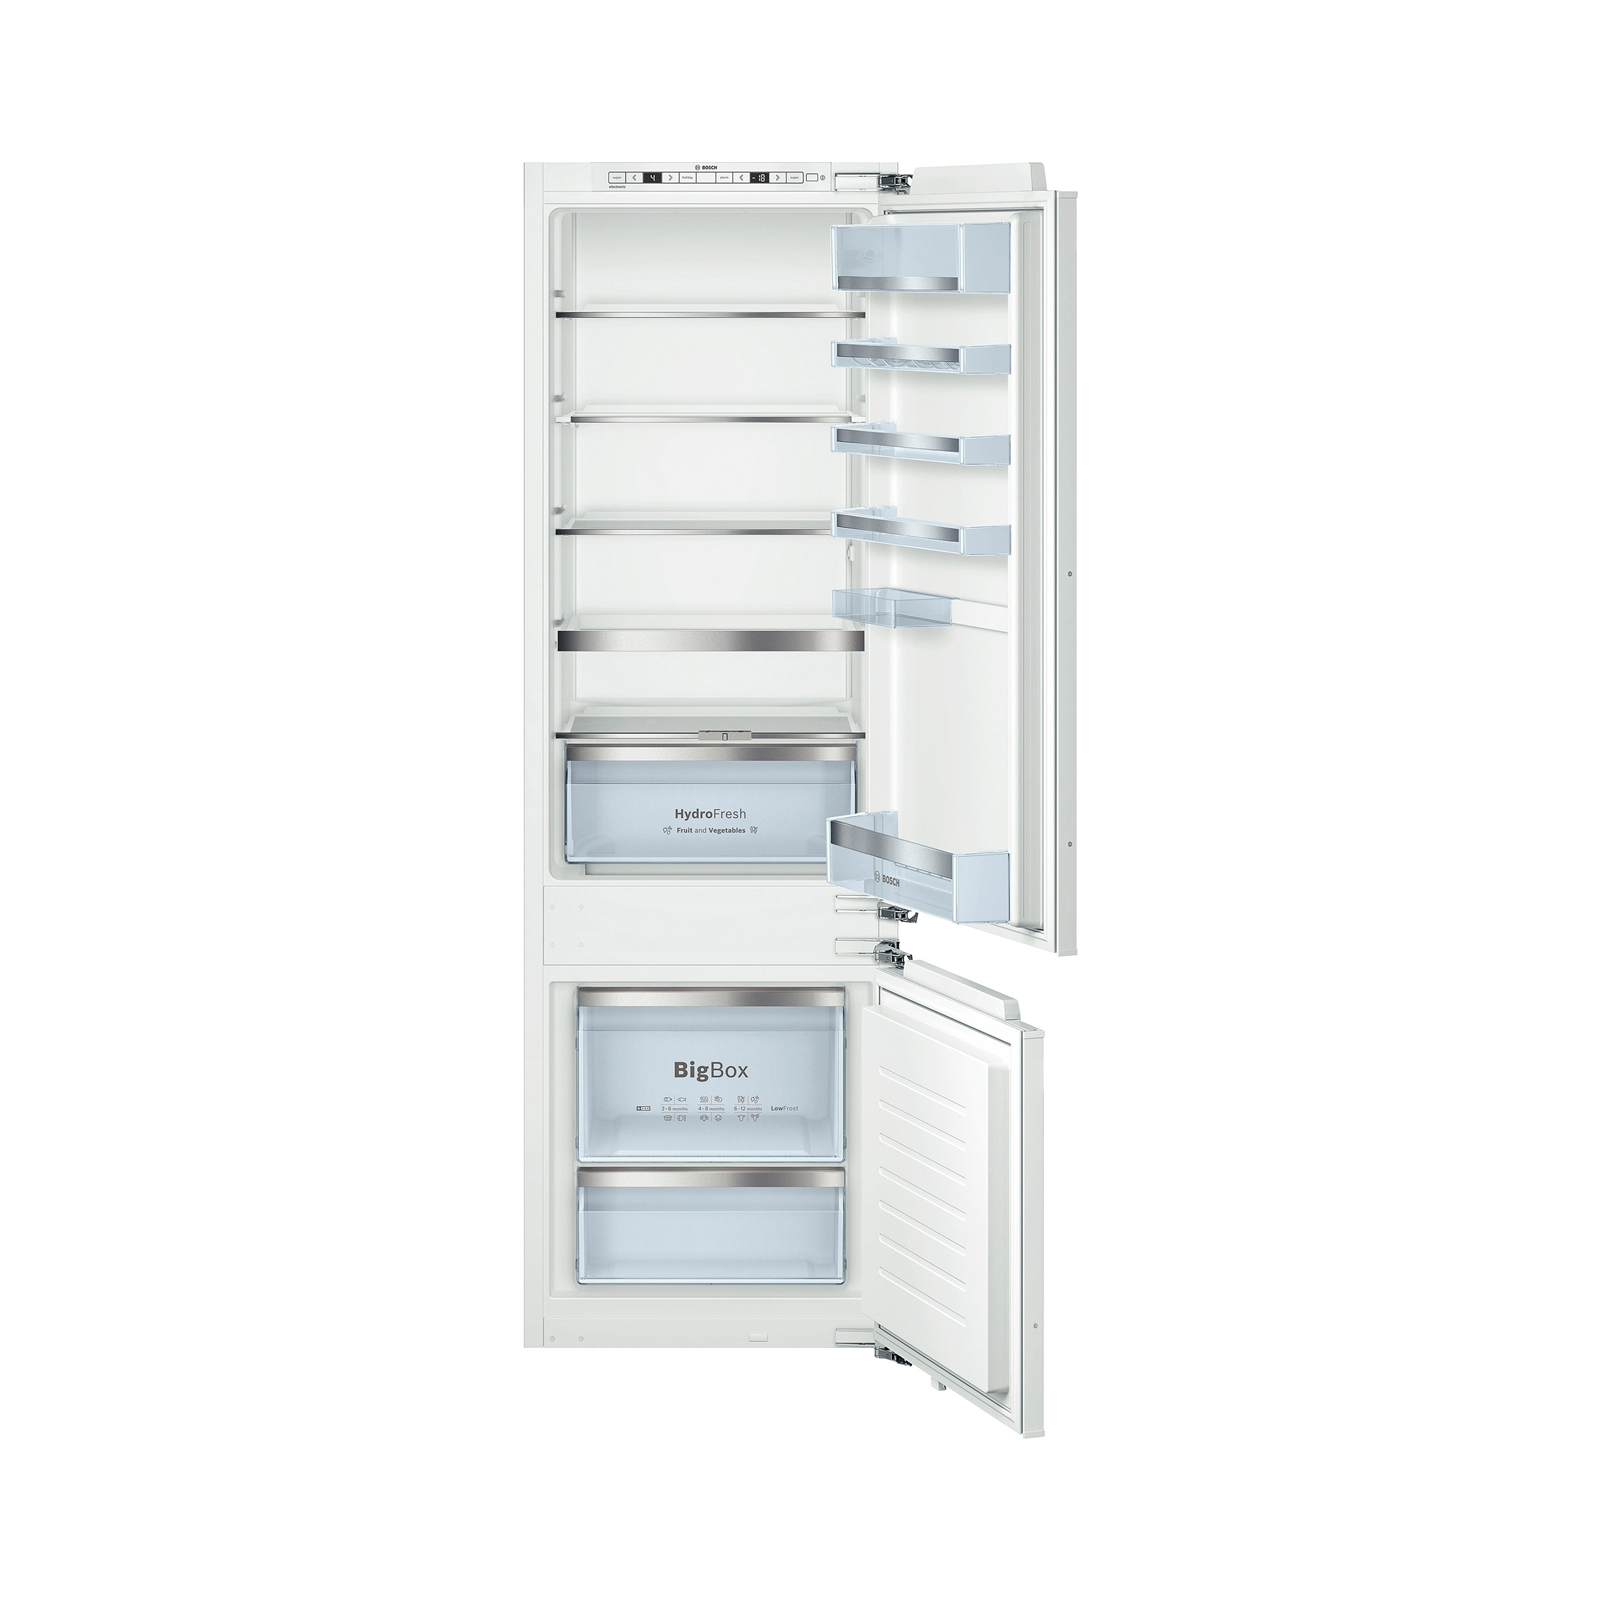 Холодильник Bosch KIS87AF30